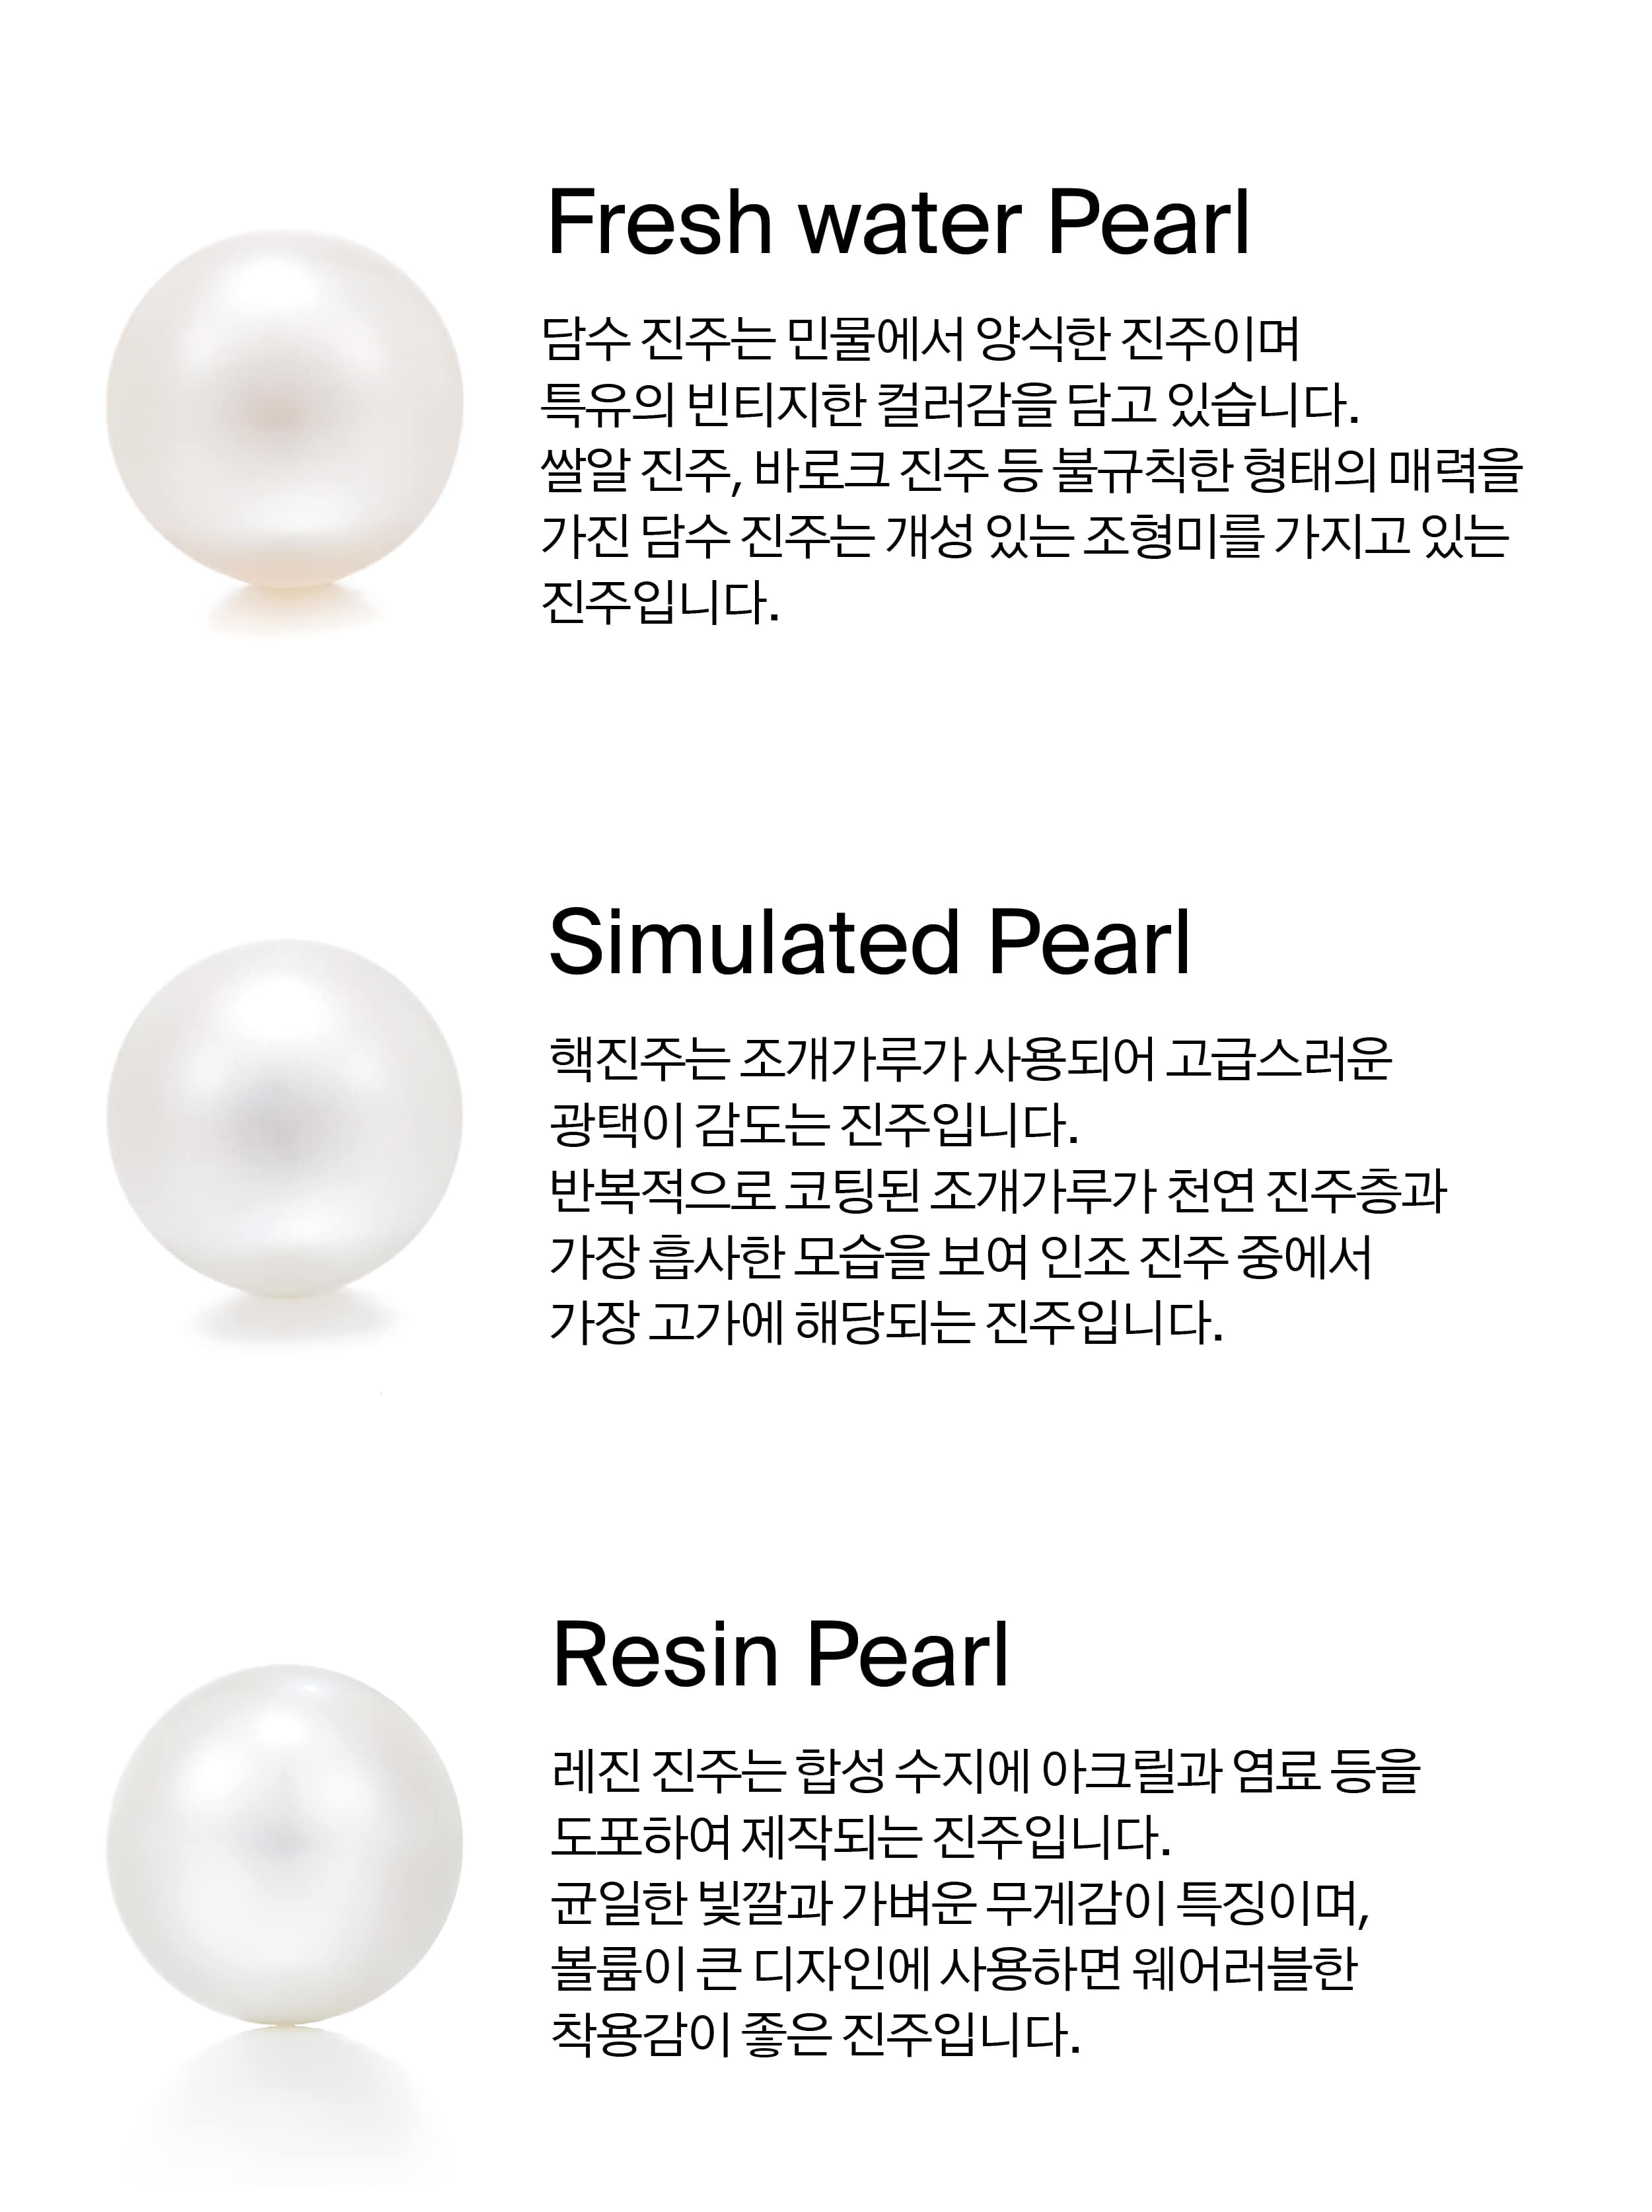 various_pearls